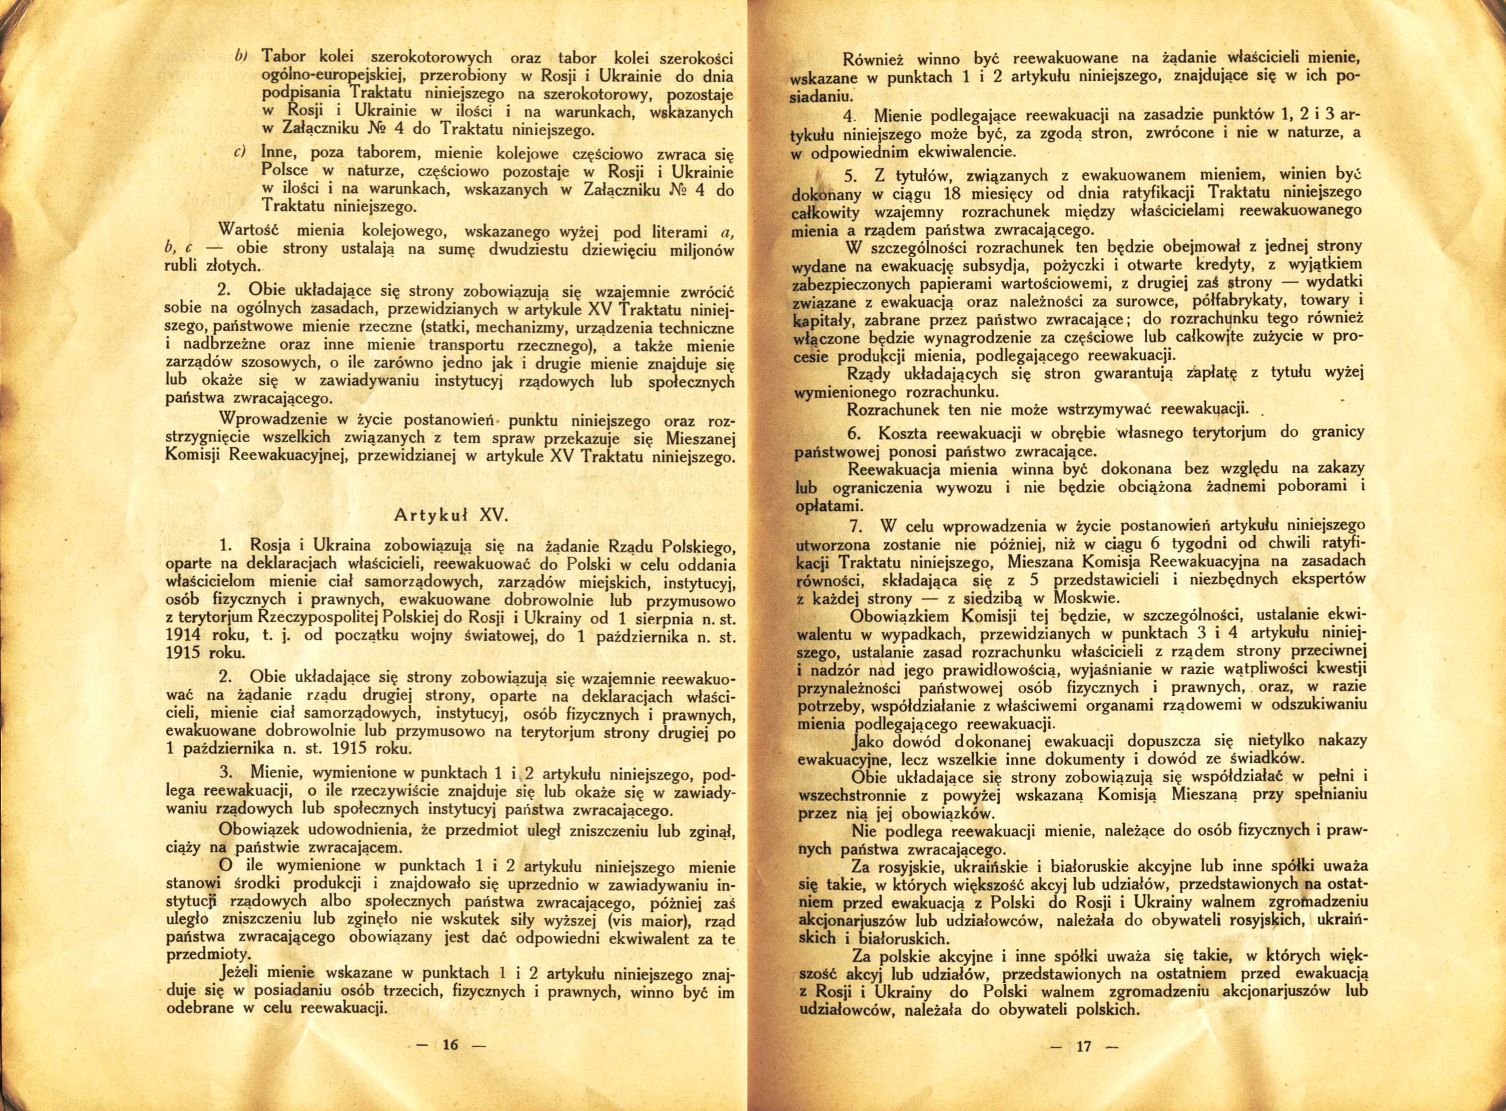 Traktat Pokoju między Polską a Rosją i Ukrainą podpisany w Rydze dnia 18 marca 1921 roku, s. 16-17, Akta Jana Dąbskiego, sygn. 5